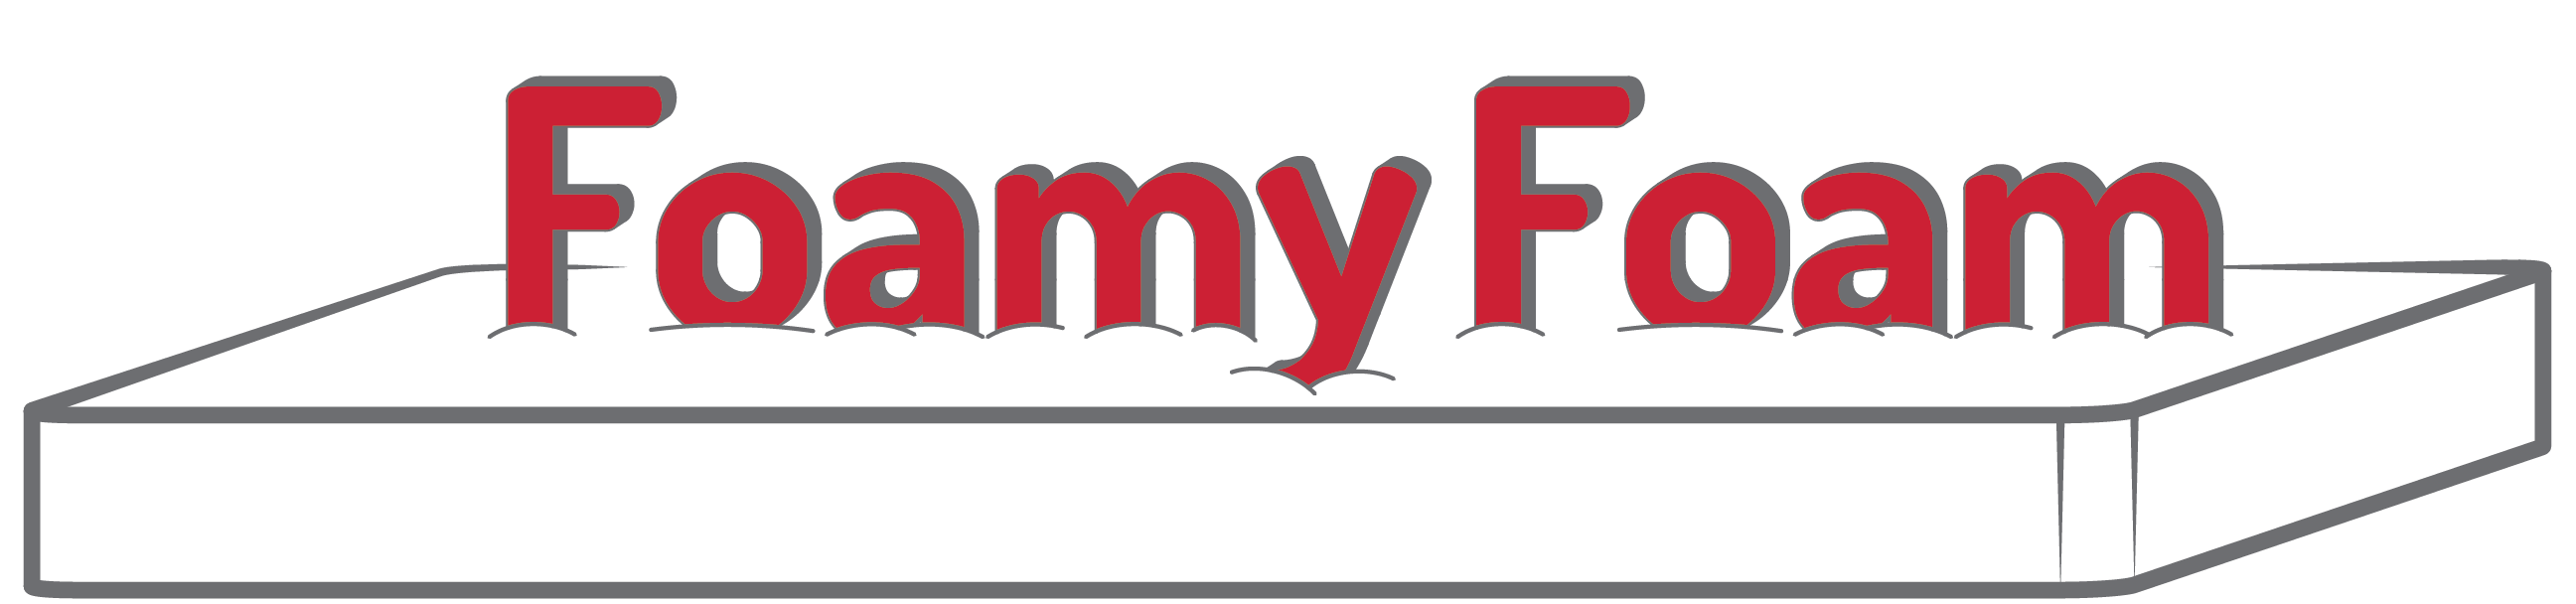 FoamyFoam Store